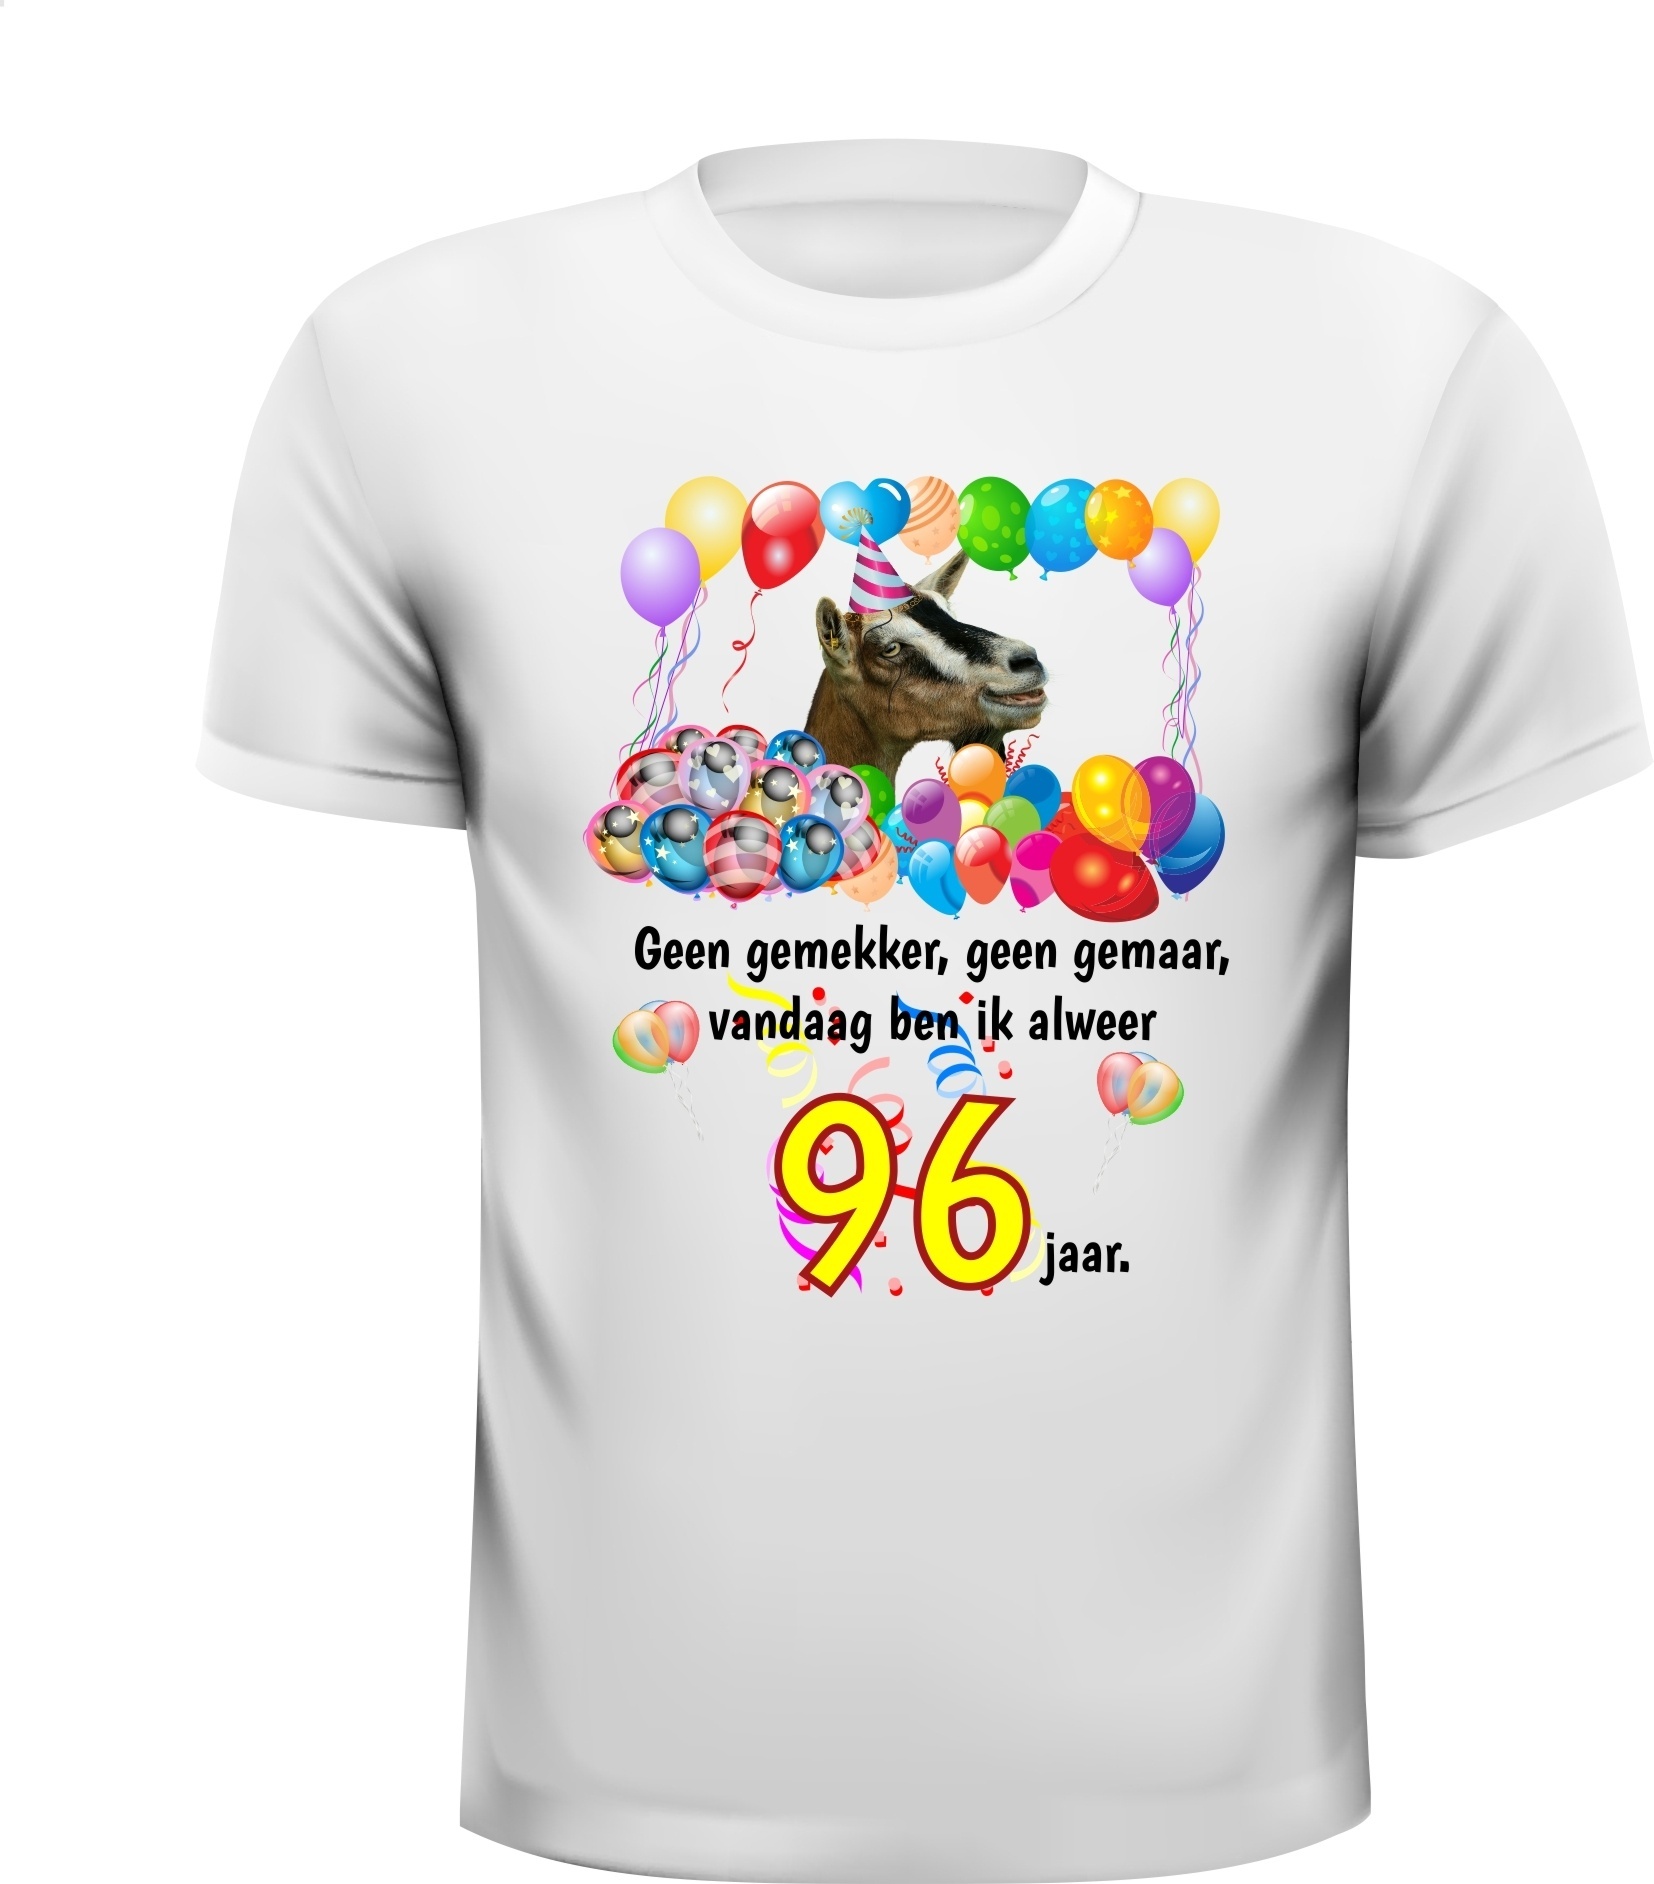 Verwonderlijk Full colour verjaardag shirt met leuke tekst en XM-42